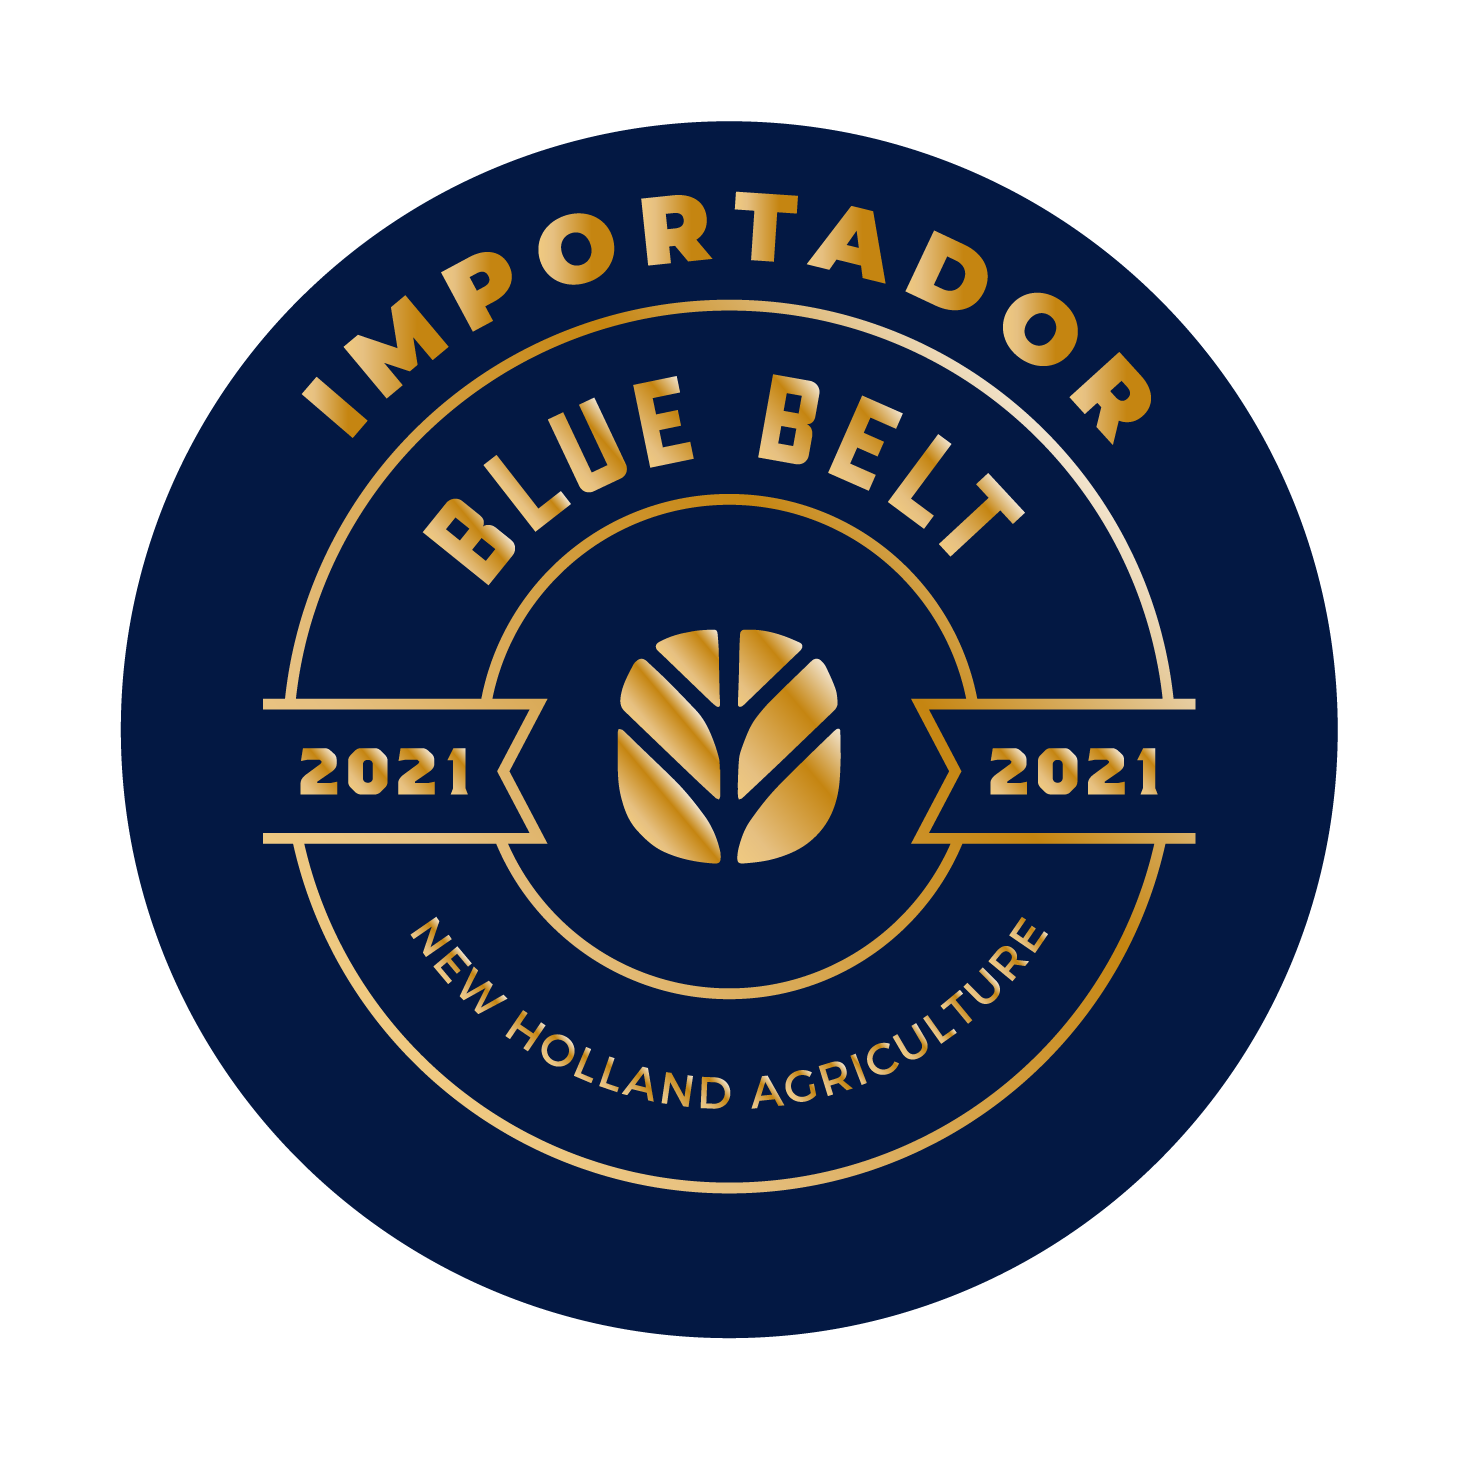 New Holland Agriculture entrega la categoría BLUE BELT a SK Comercial